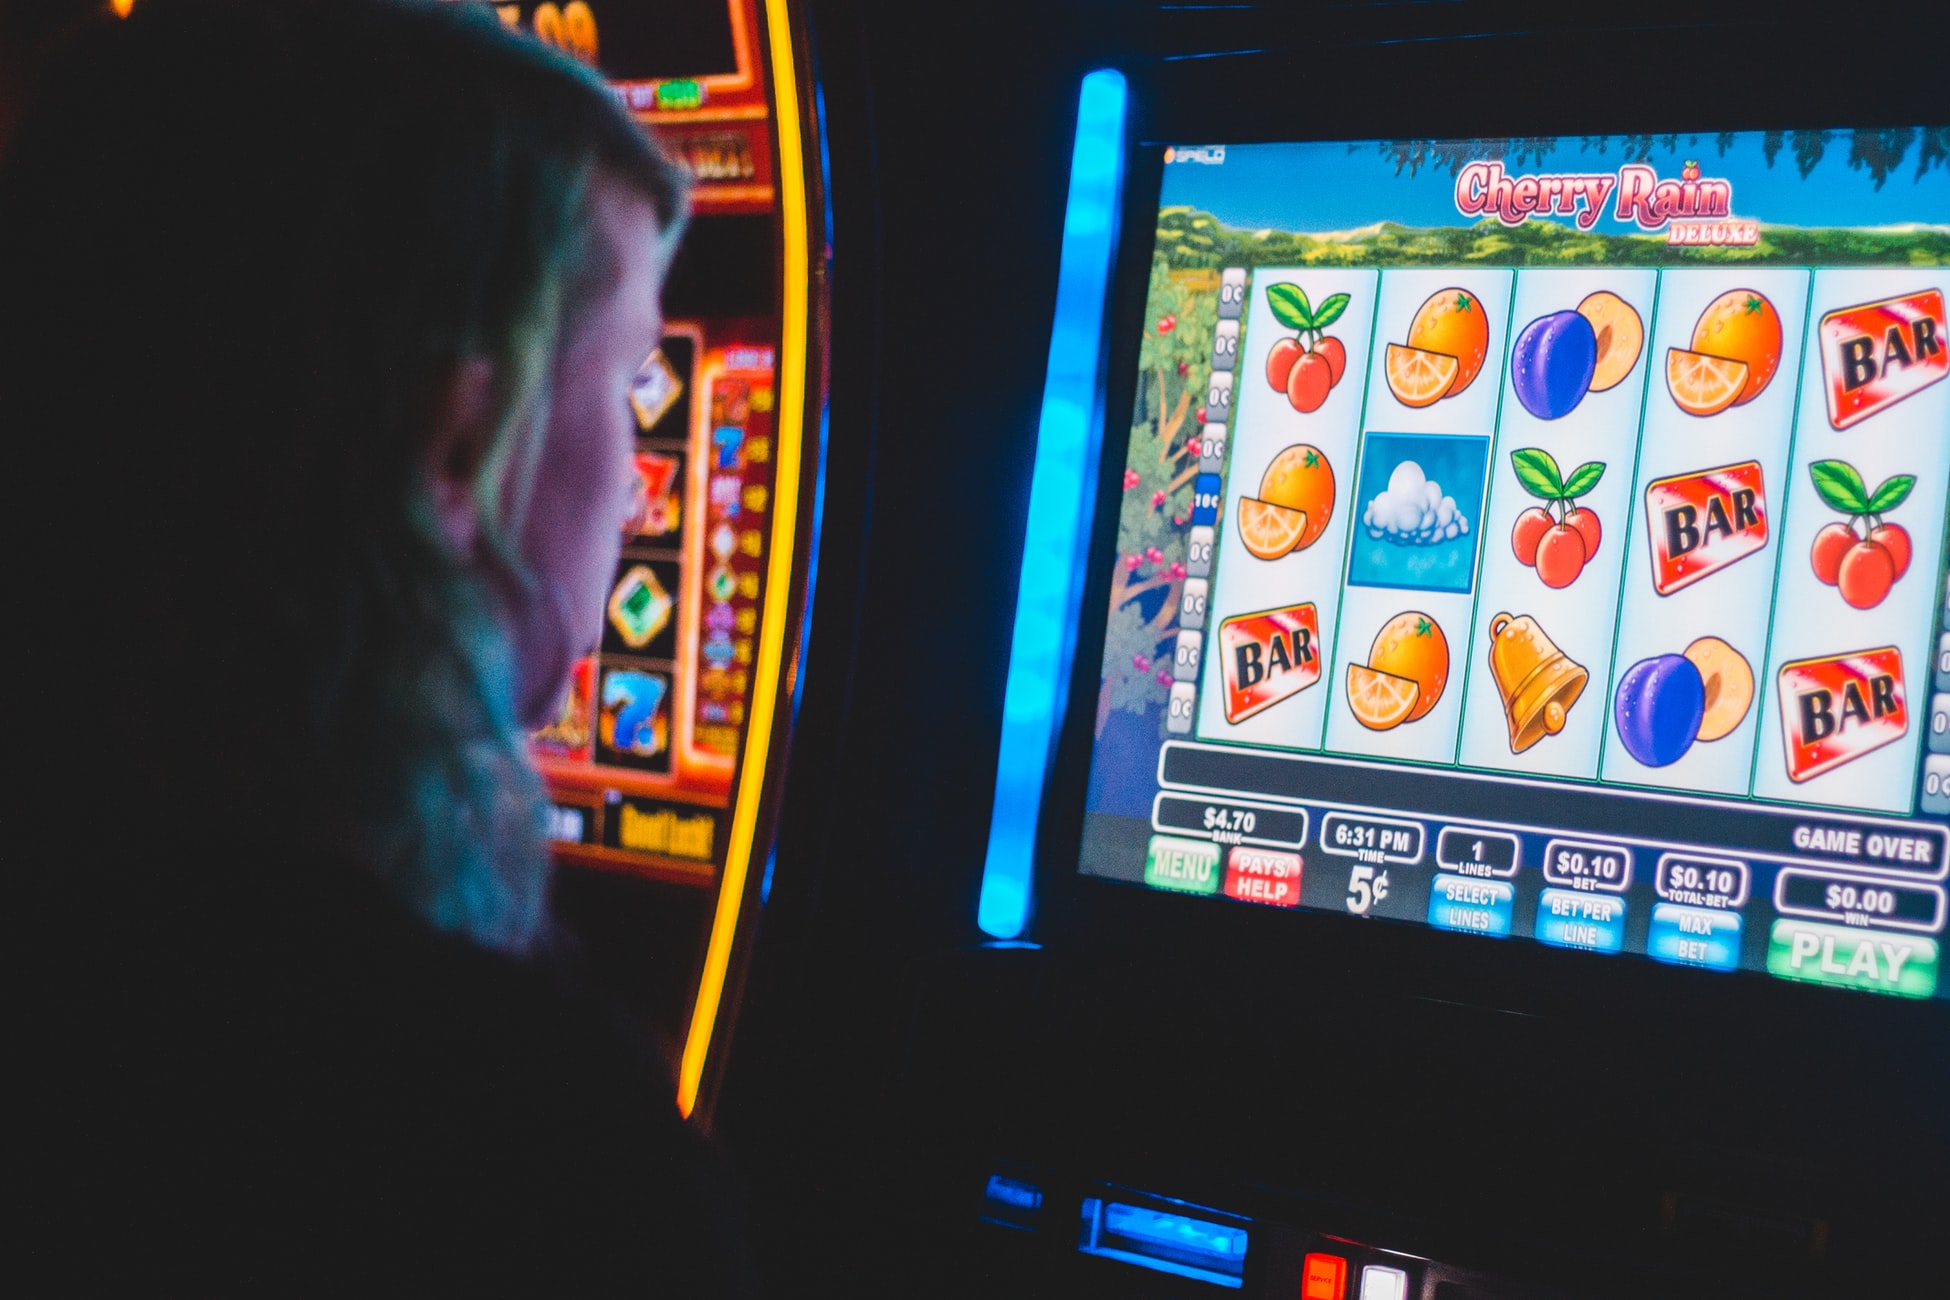 Gry kasynowe online są bardzo popularne wśród polskich graczy